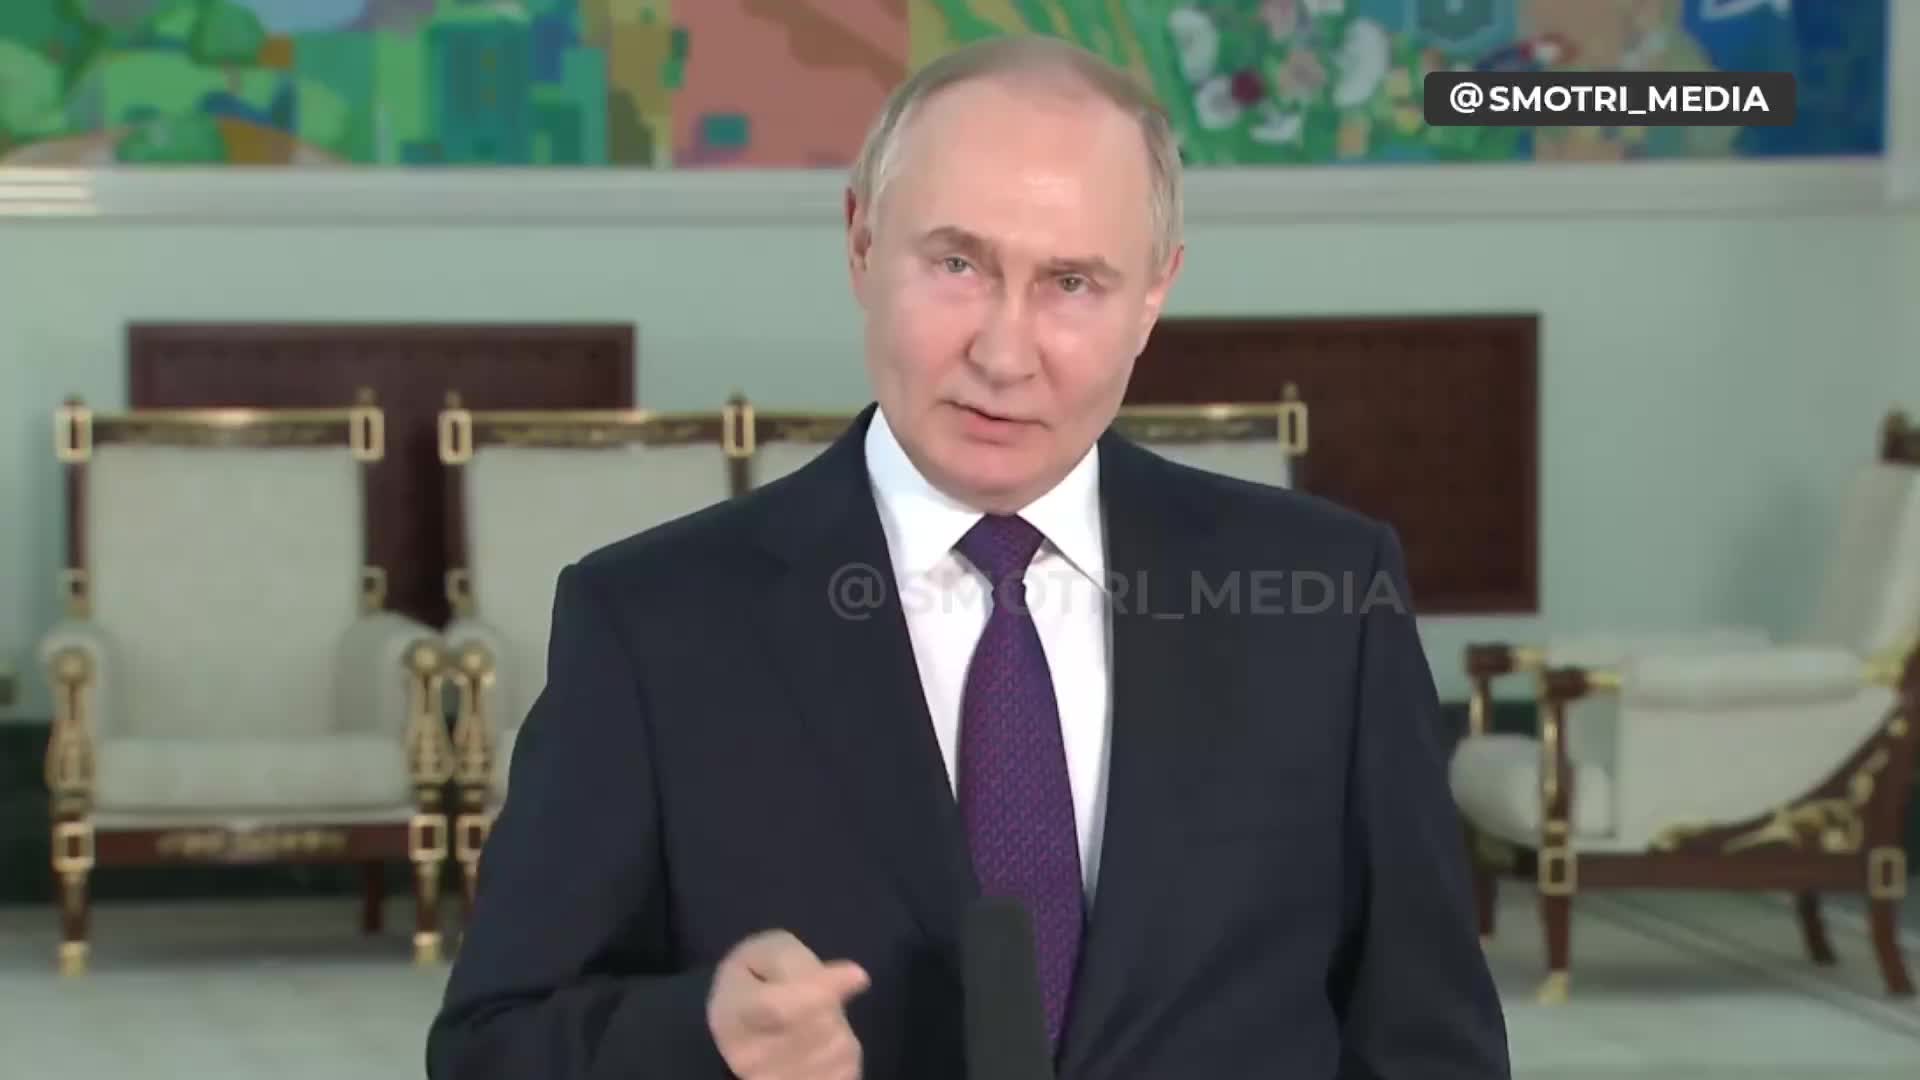 Putin kaže da je Vrhovna rada Ukrajine legitimna i da predsjednik Vrhovne rade treba biti vršitelj dužnosti predsjednika